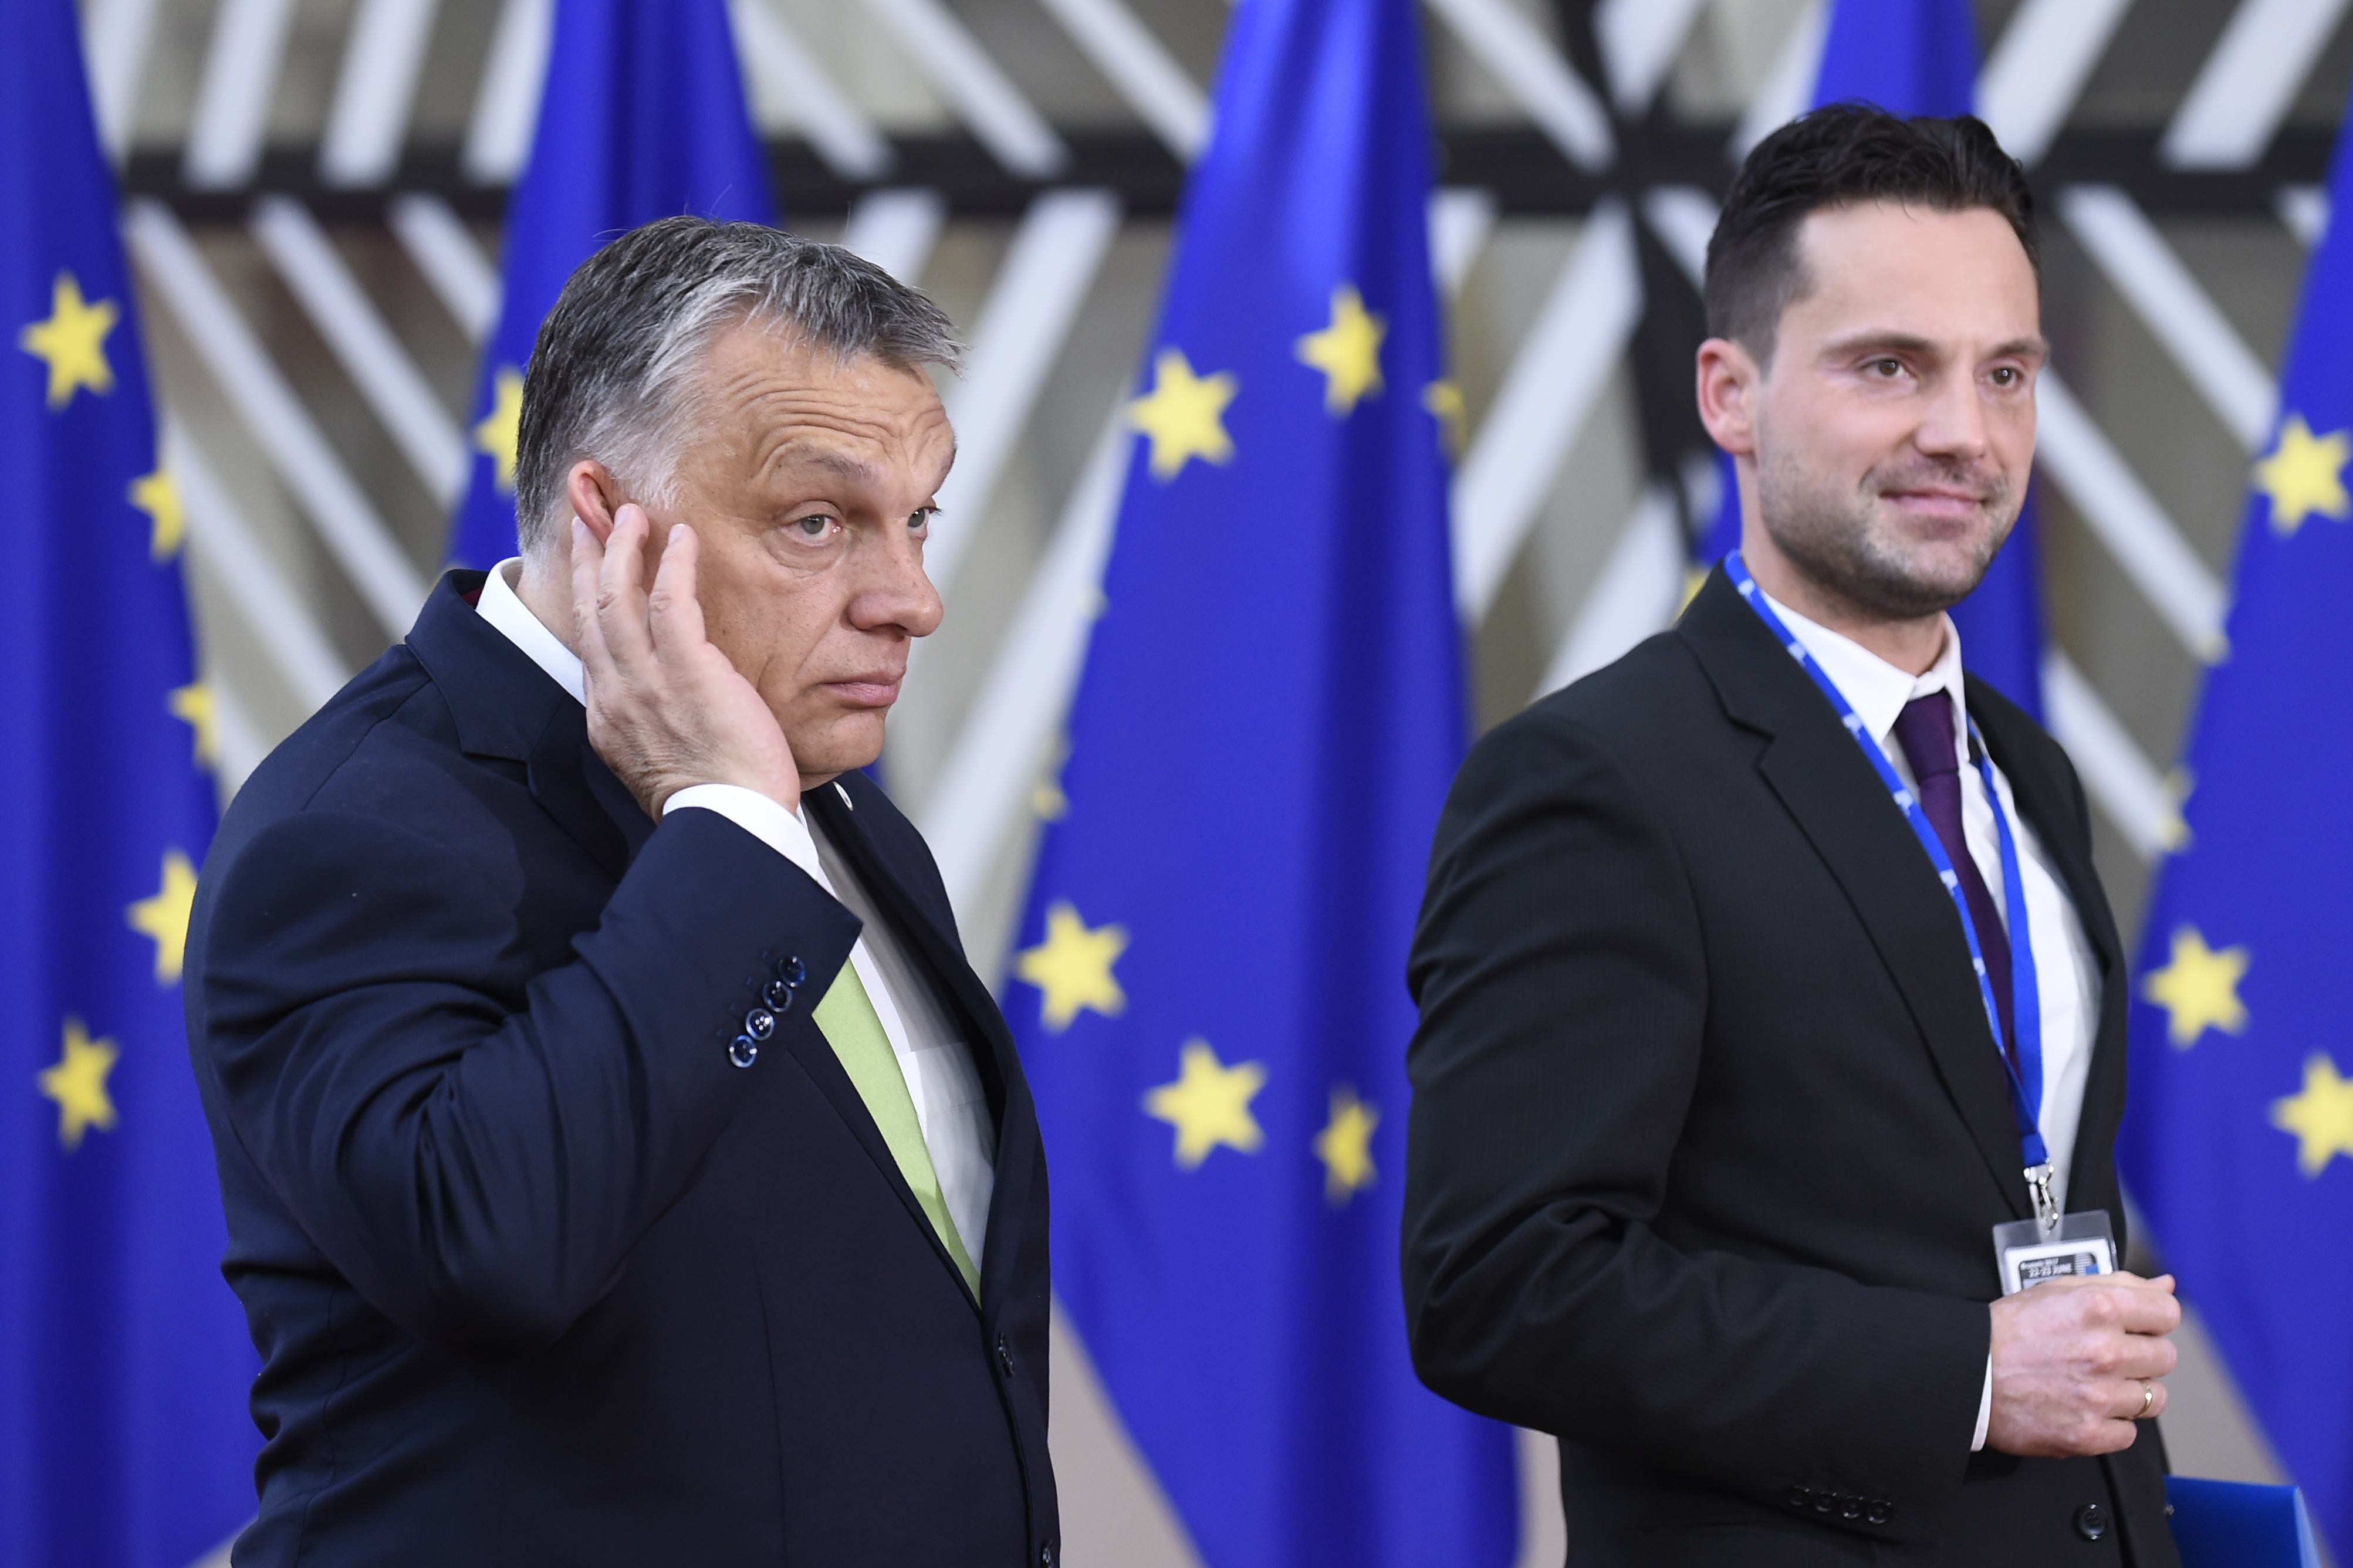 Még az az ember sem ad interjút, aki közölni szokta, hogy Orbán nem ad interjút